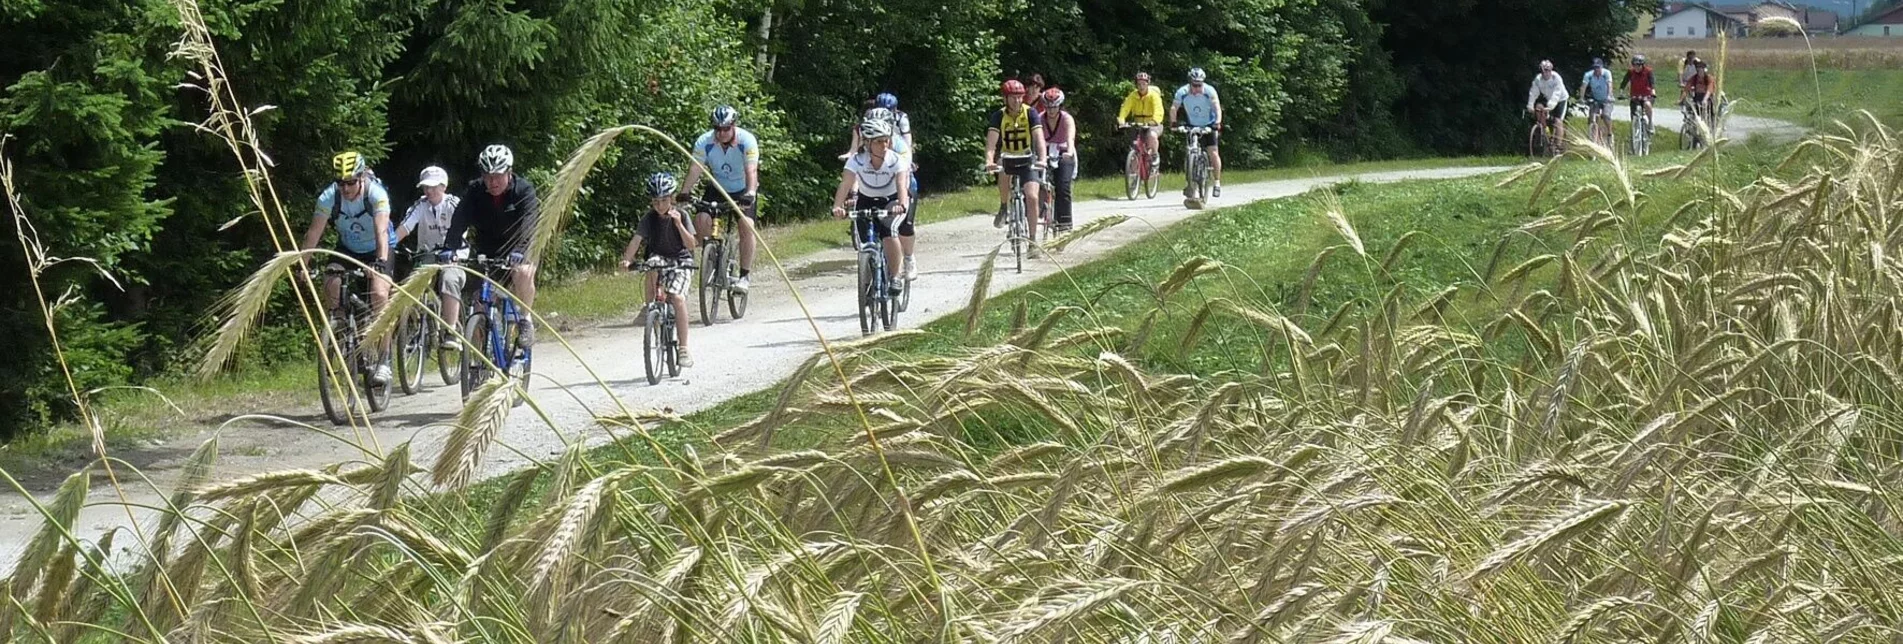 Radfahren Thermen Rad- und Wandertour - Touren-Impression #1 | © Erlebnisregion Murtal